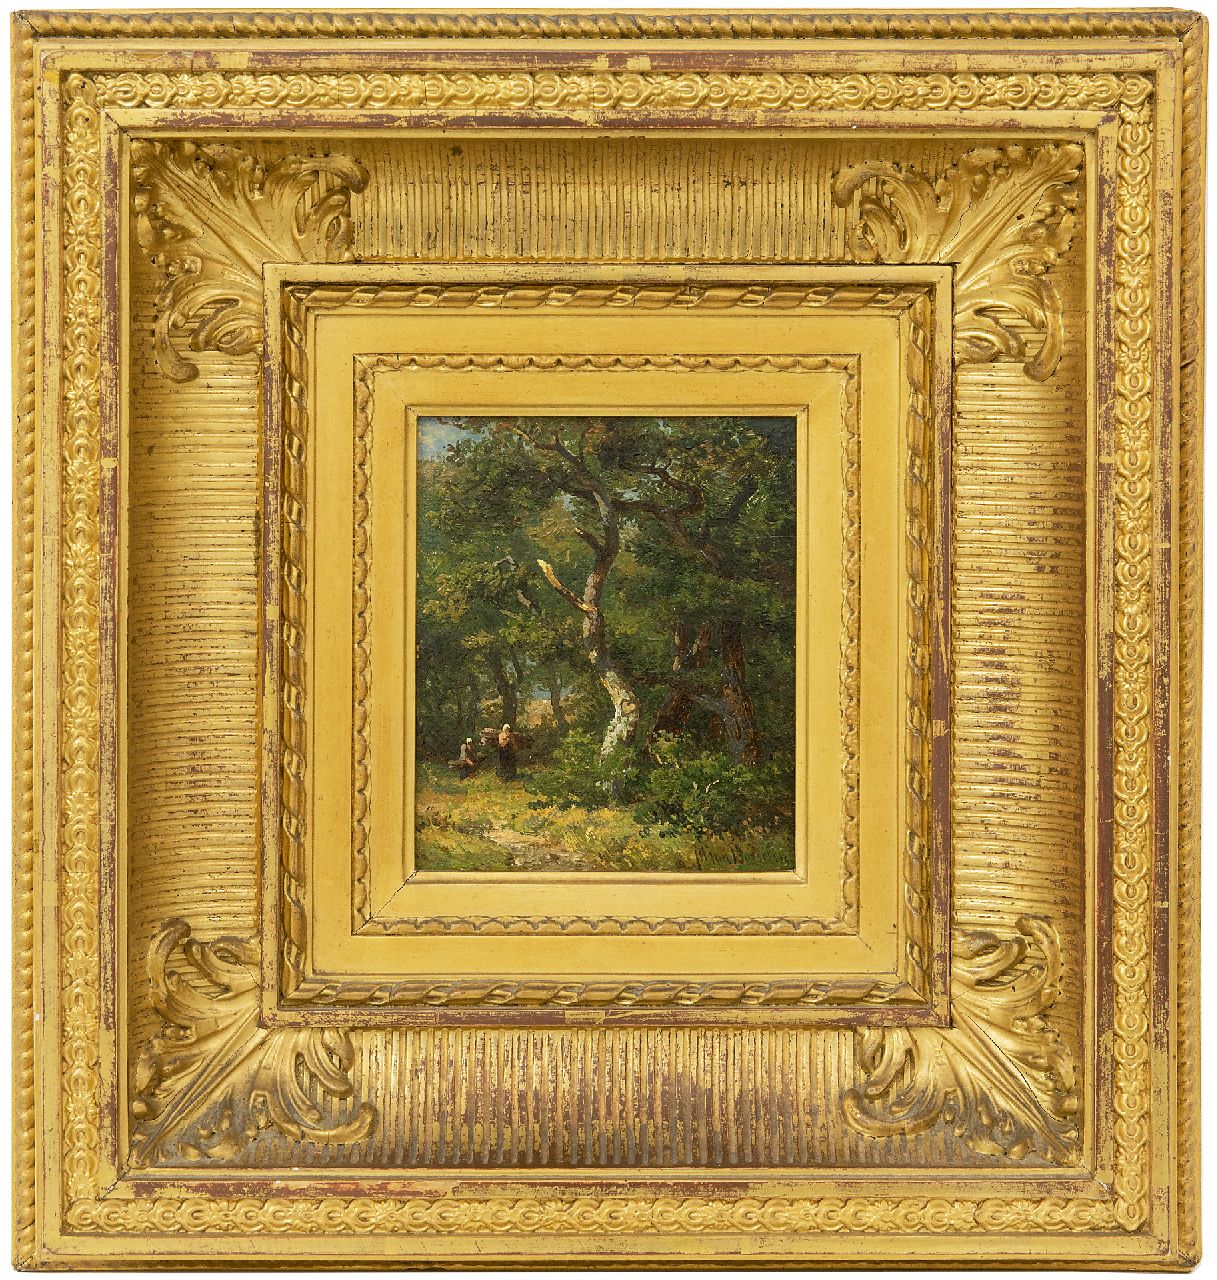 Borselen J.W. van | Jan Willem van Borselen, Boslandschap, olieverf op paneel 11,0 x 9,0 cm